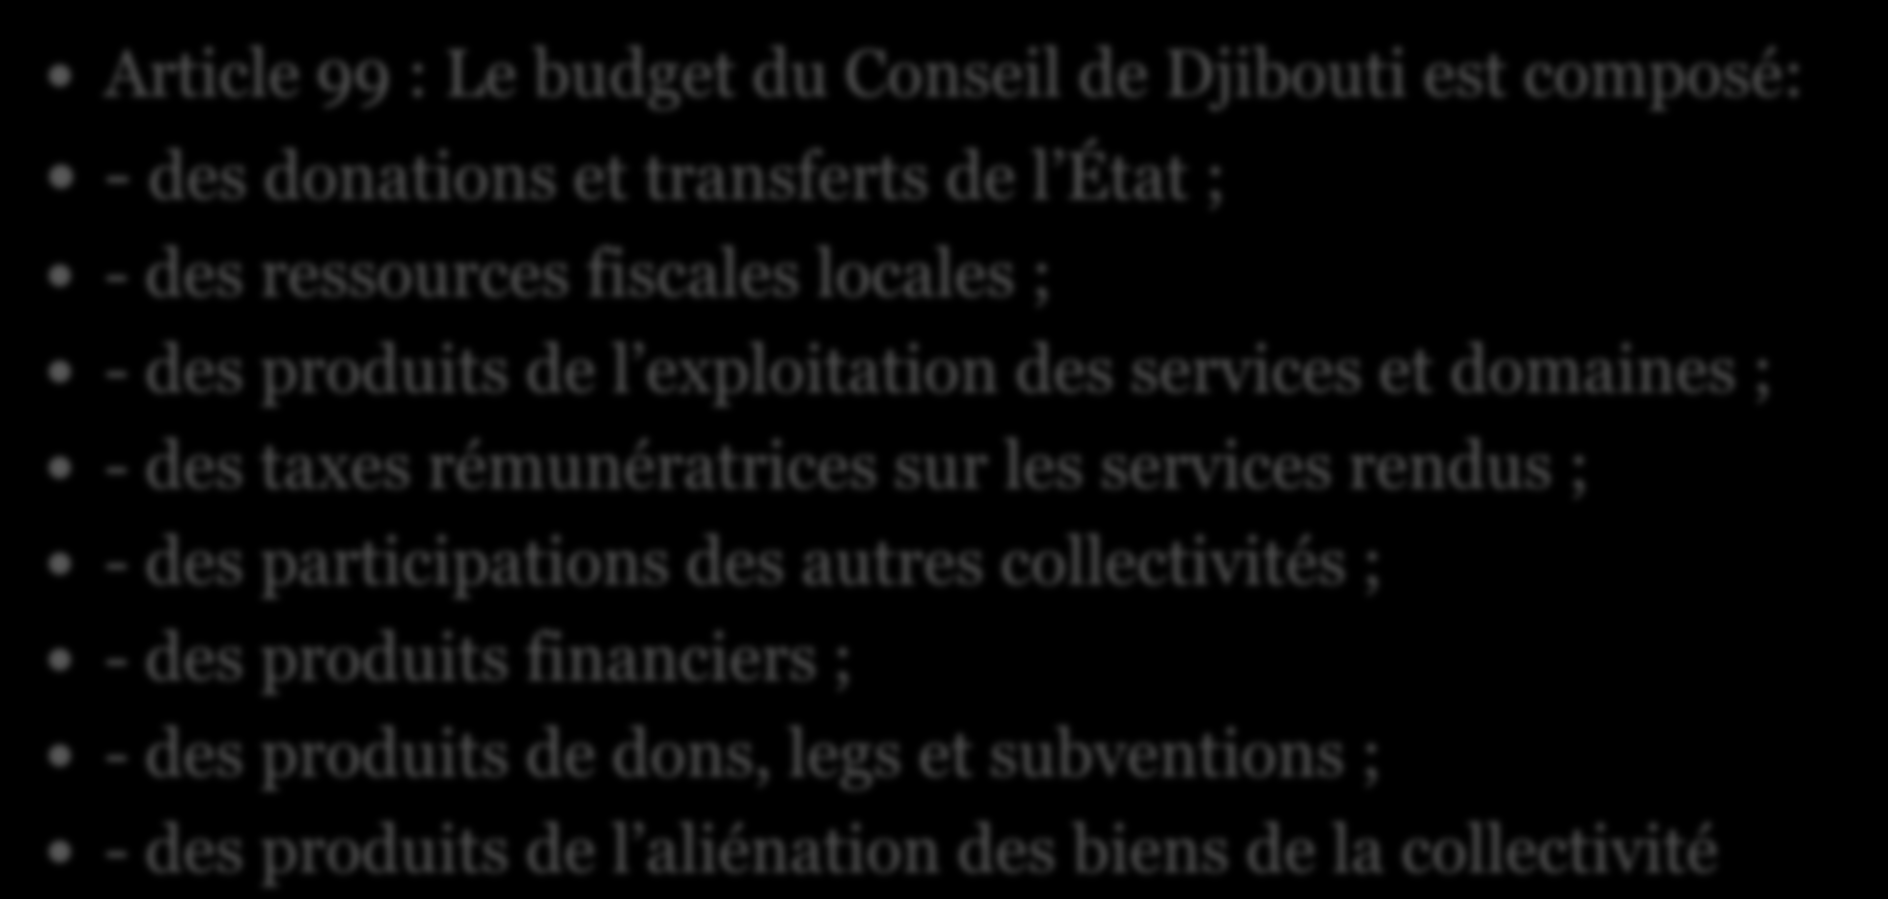 Les recettes de la municipalité Article 99 : Le budget du Conseil de Djibouti est composé: - des donations et transferts de l État ; - des ressources fiscales locales ; - des produits de l